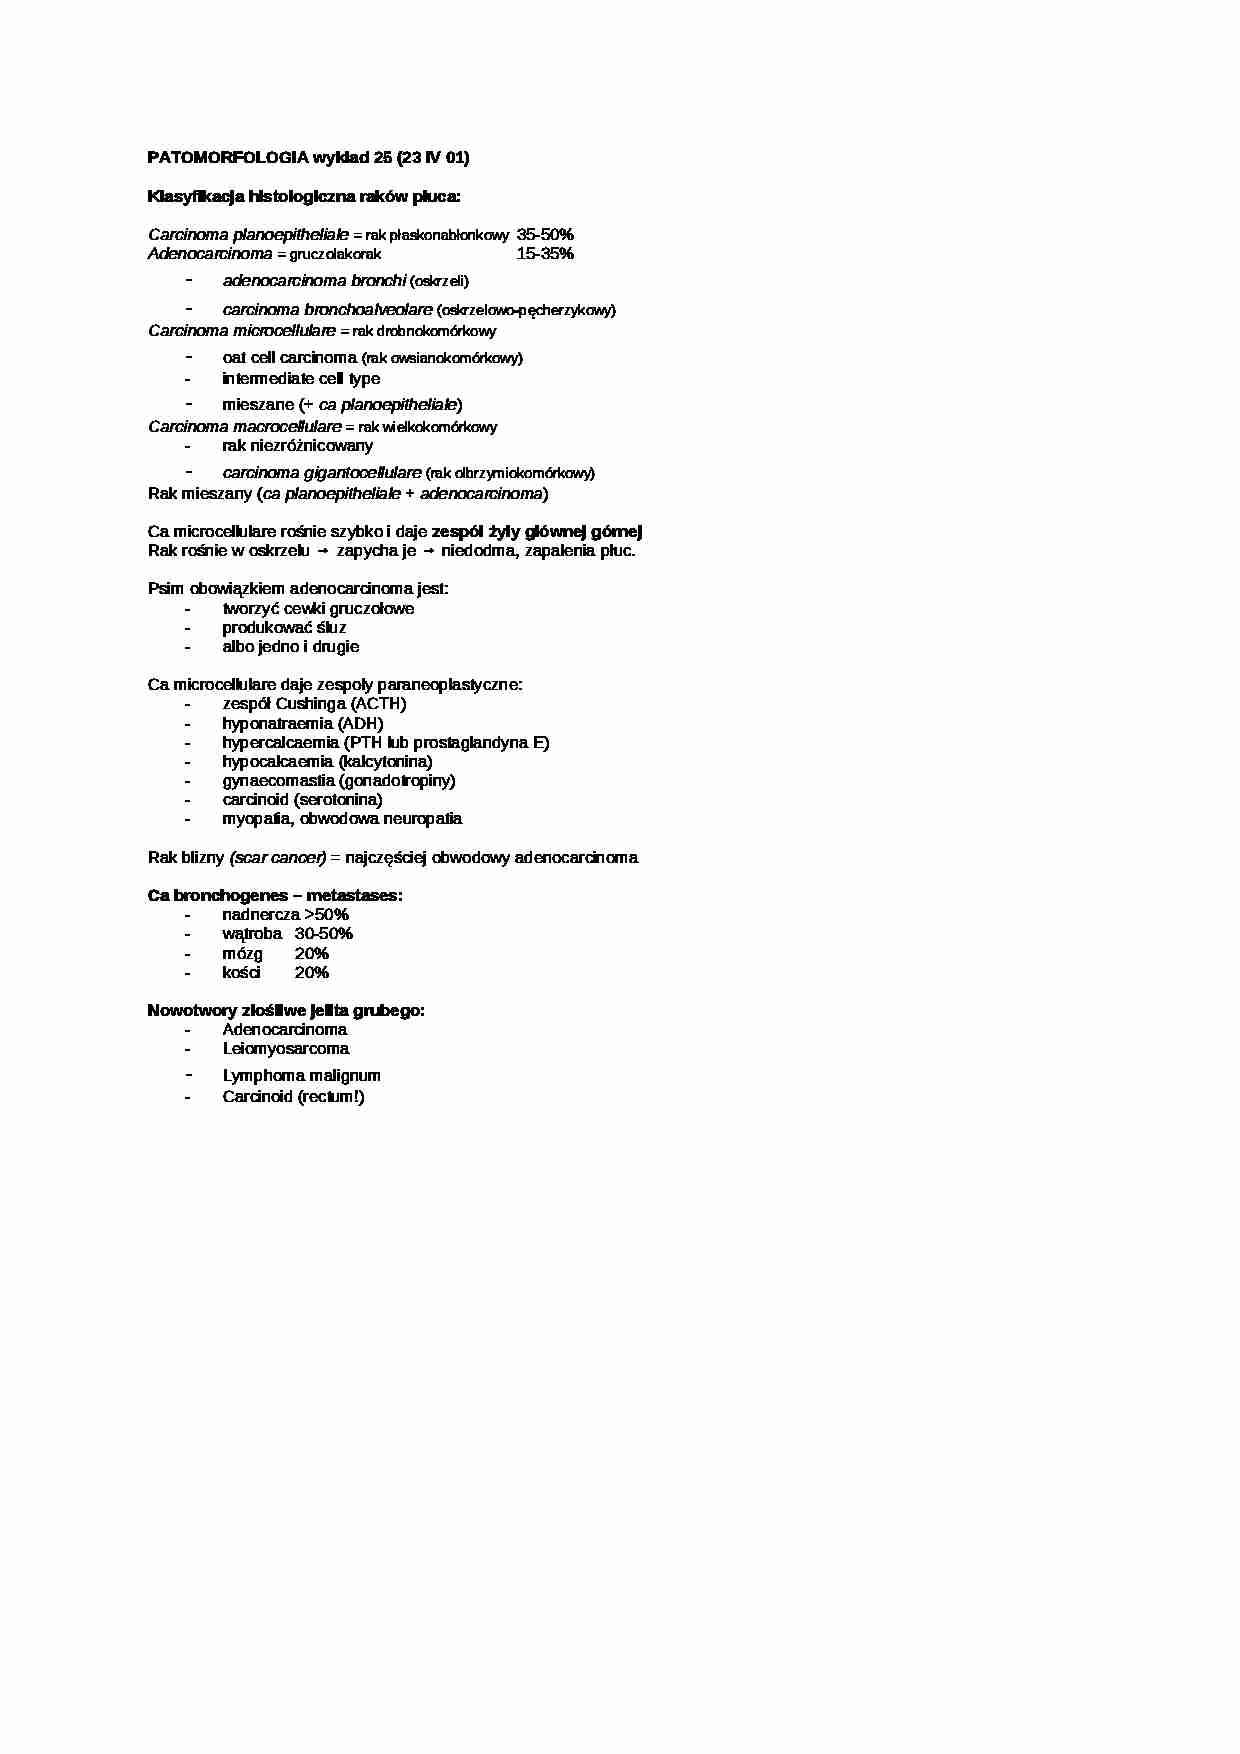 Patomorfologia - wykład 24 - strona 1